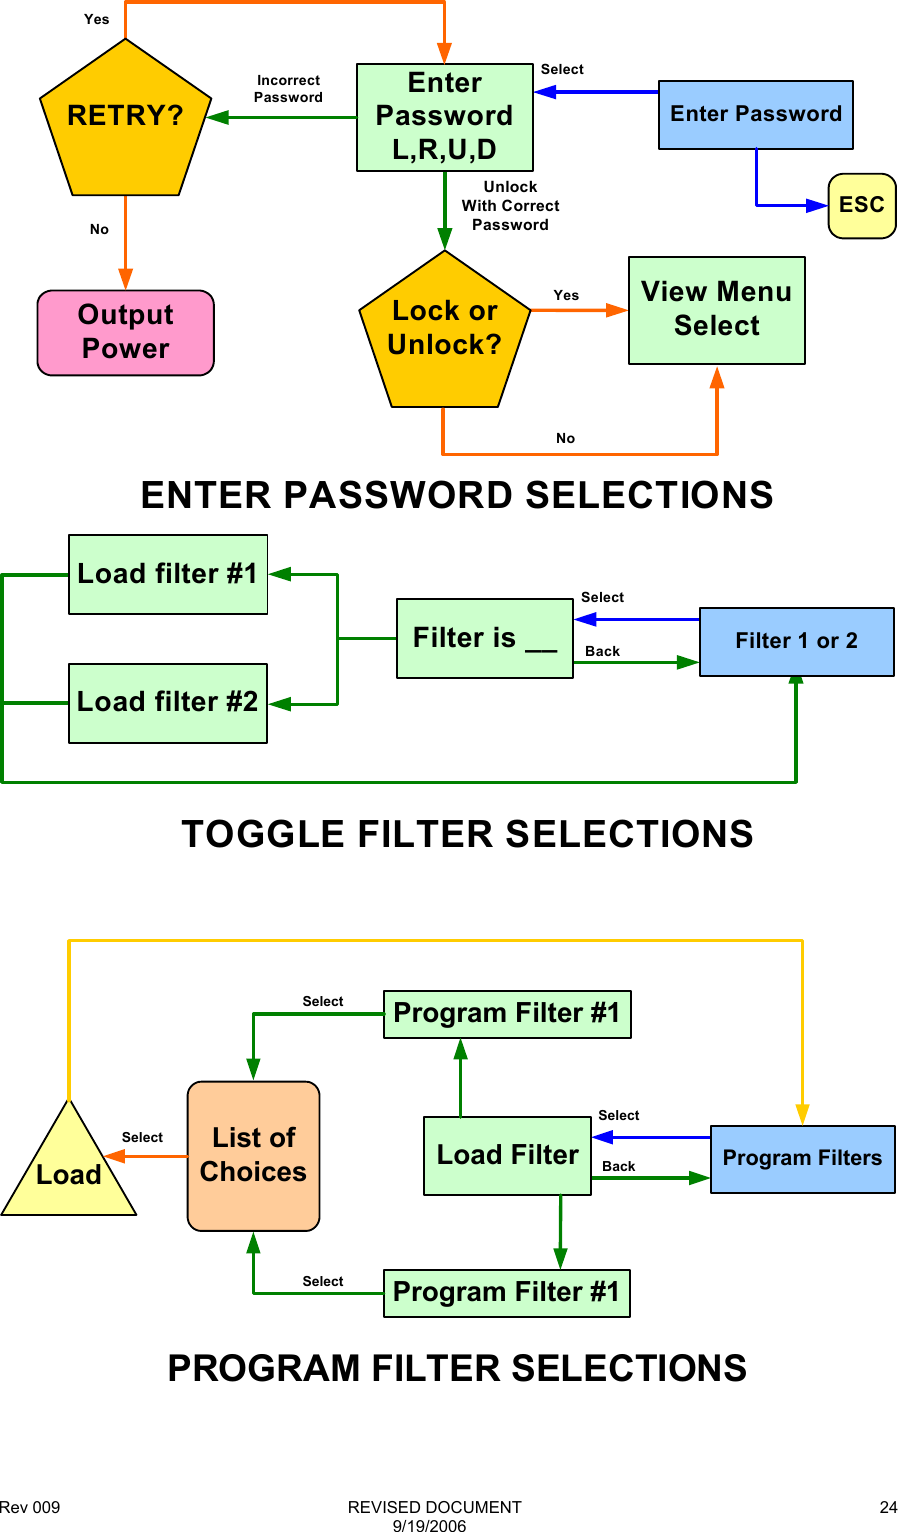 Rev 009                                                              REVISED DOCUMENT 9/19/2006 24SelectOutputPowerEnter PasswordUnlockWith CorrectPasswordEnterPasswordL,R,U,DENTER PASSWORD SELECTIONSYesNoRETRY?Incorrect PasswordSelectBackTOGGLE FILTER SELECTIONSFilter is __ Filter 1 or 2Load filter #2Load filter #1Lock or Unlock?View Menu SelectYesNoESC   PROGRAM FILTER SELECTIONSLoad FilterSelectBack Program FiltersProgram Filter #1Program Filter #1List of ChoicesLoadSelectSelectSelect  